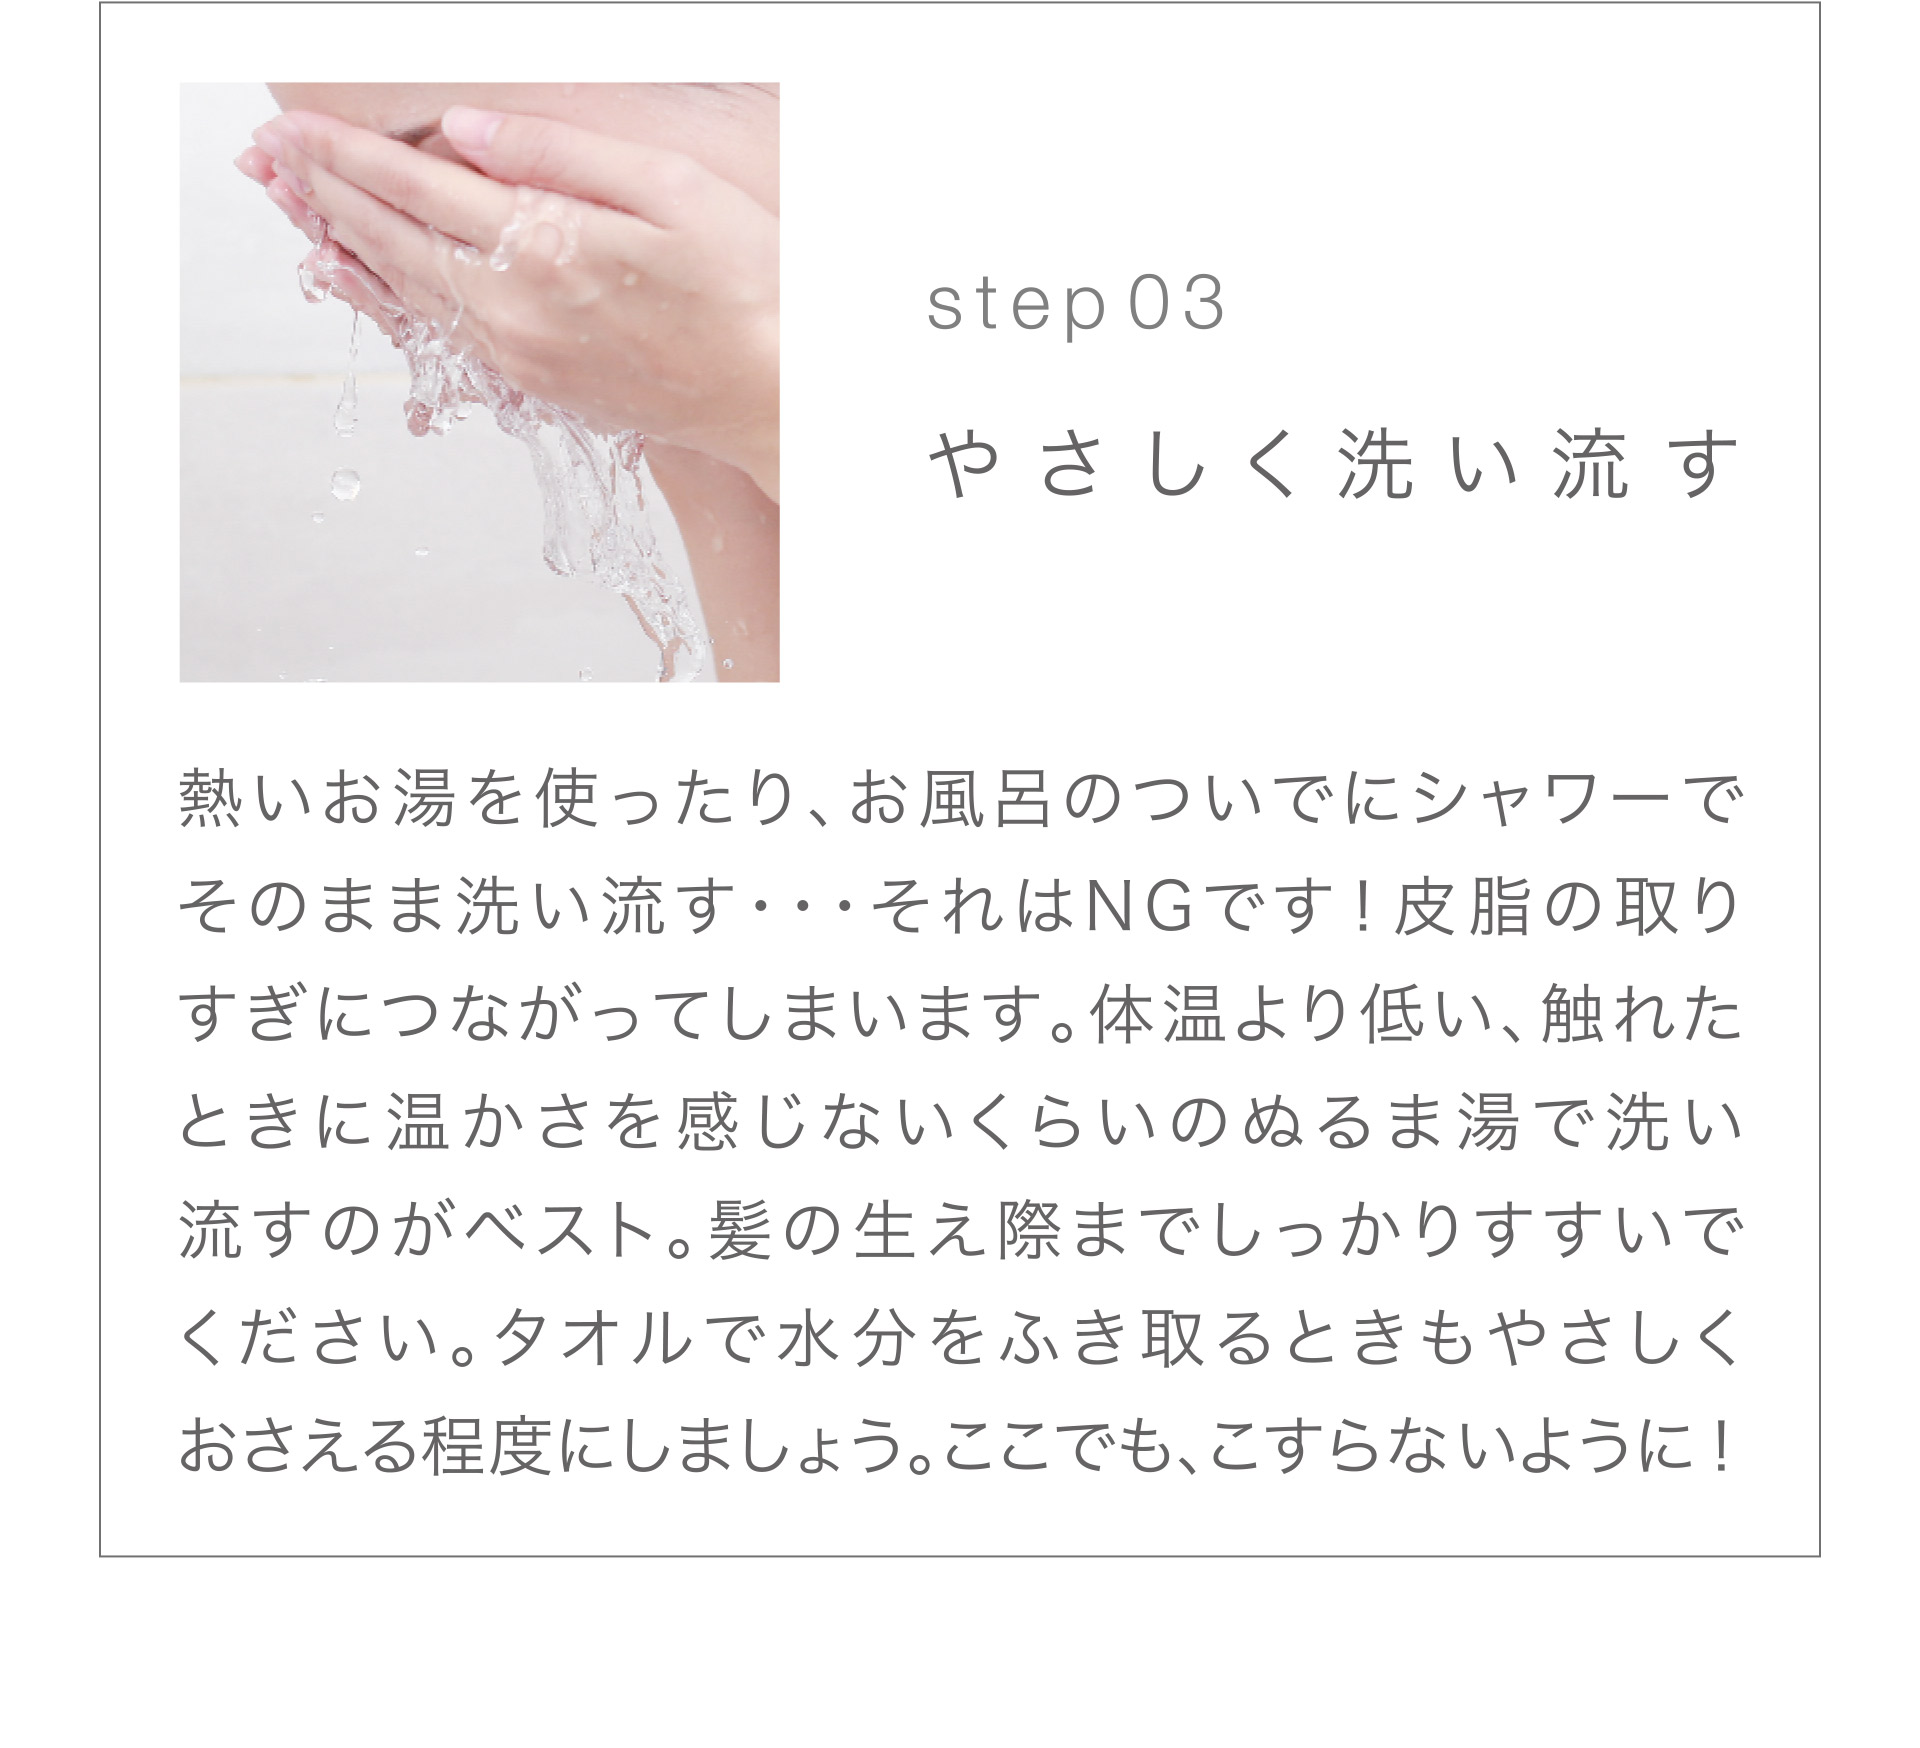 【Step03】やさしく洗い流す